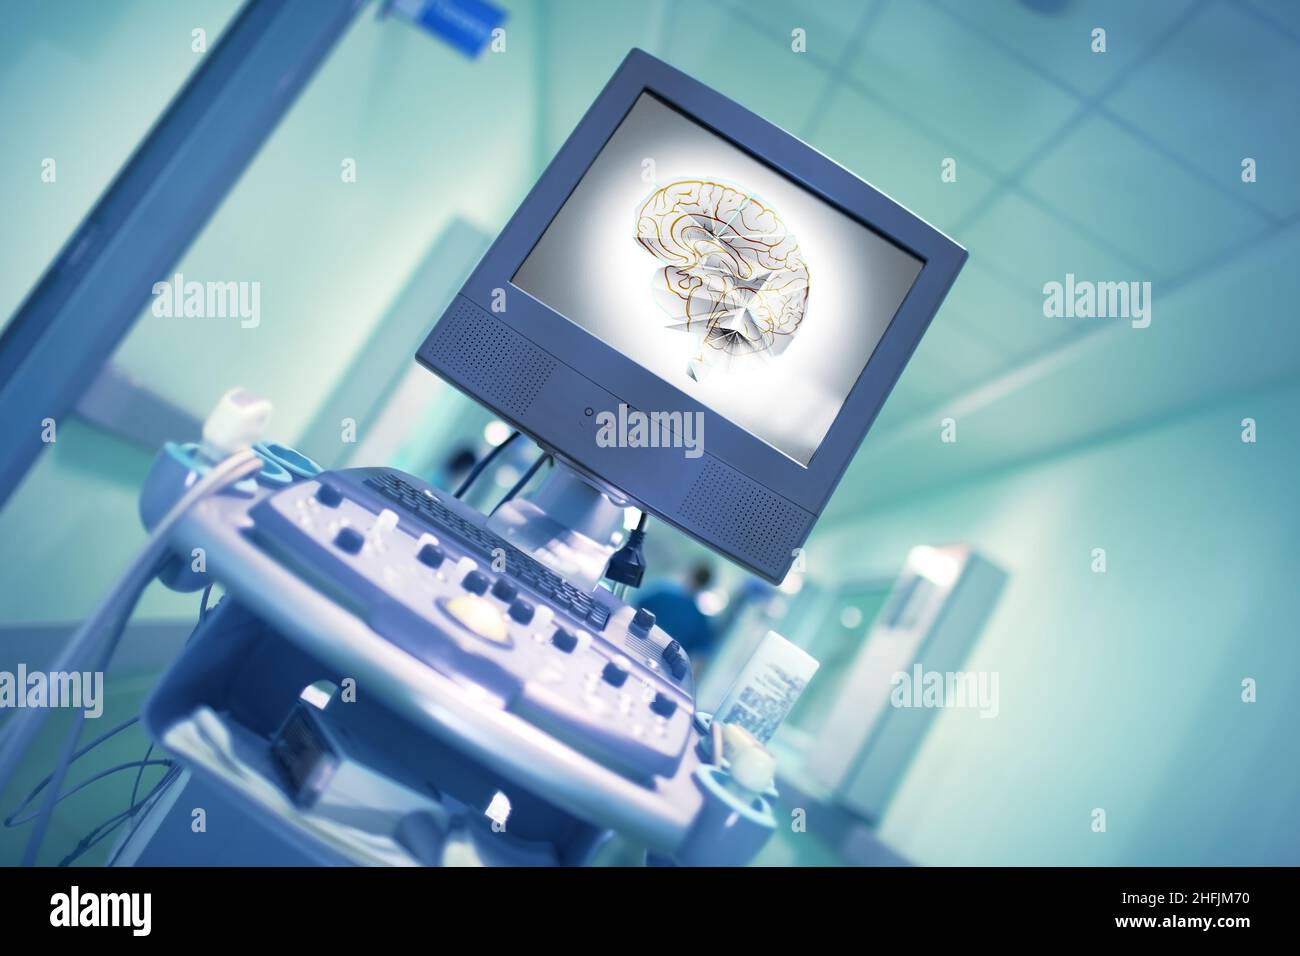 Immagine del cervello umano sul display di apparecchiature mediche nel corridoio dell'ospedale con la silhouette sfocata in movimento del medico ambulante. Foto Stock